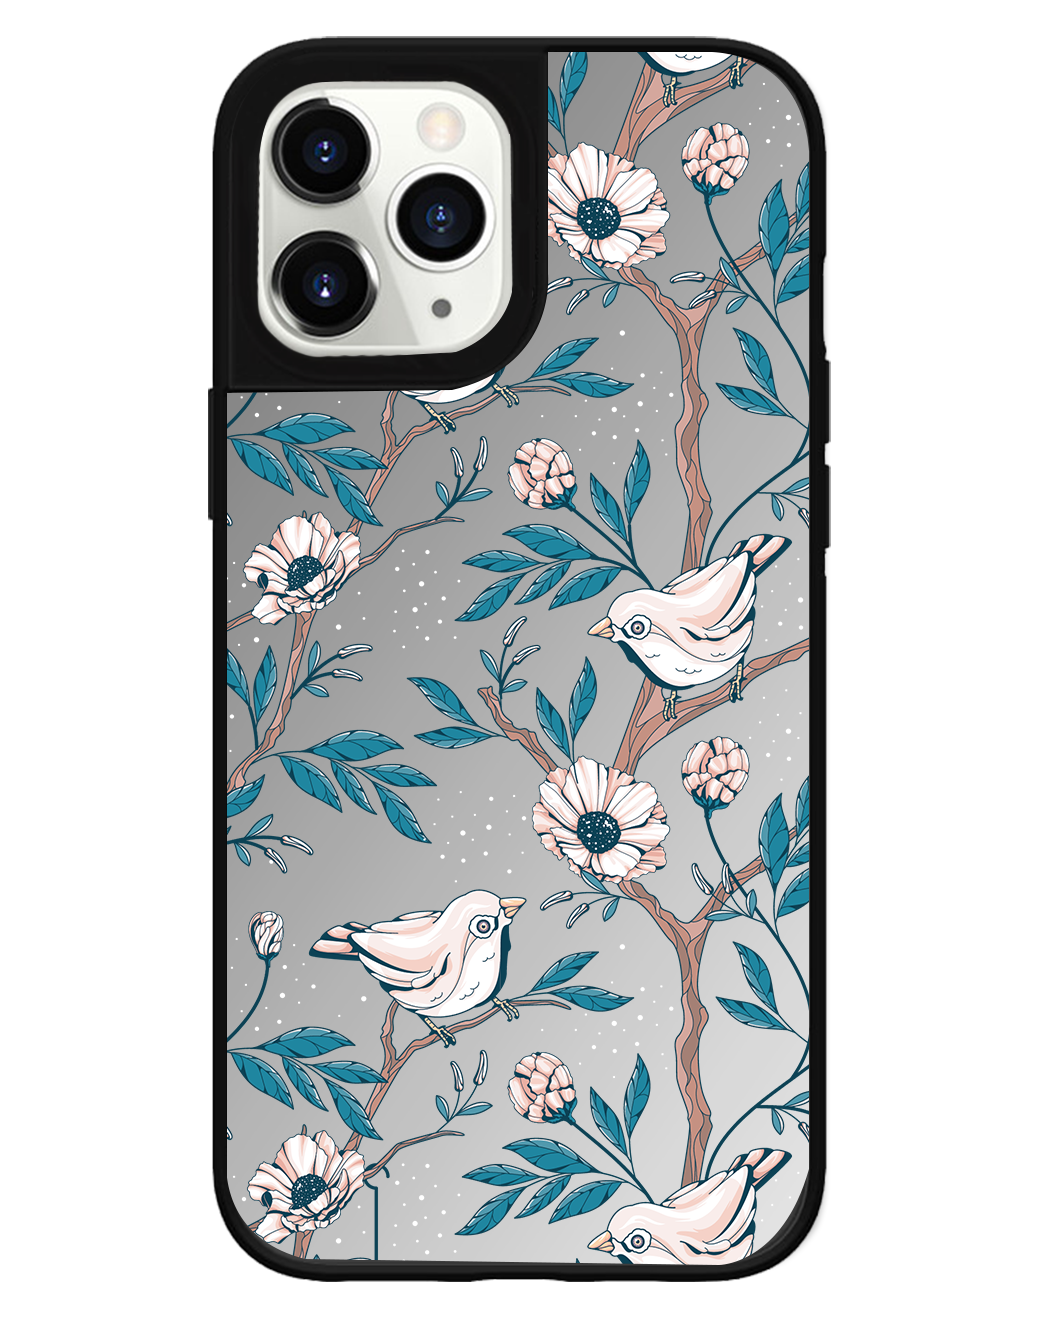 iPhone Mirror Grip Case - Lovebird 3.0